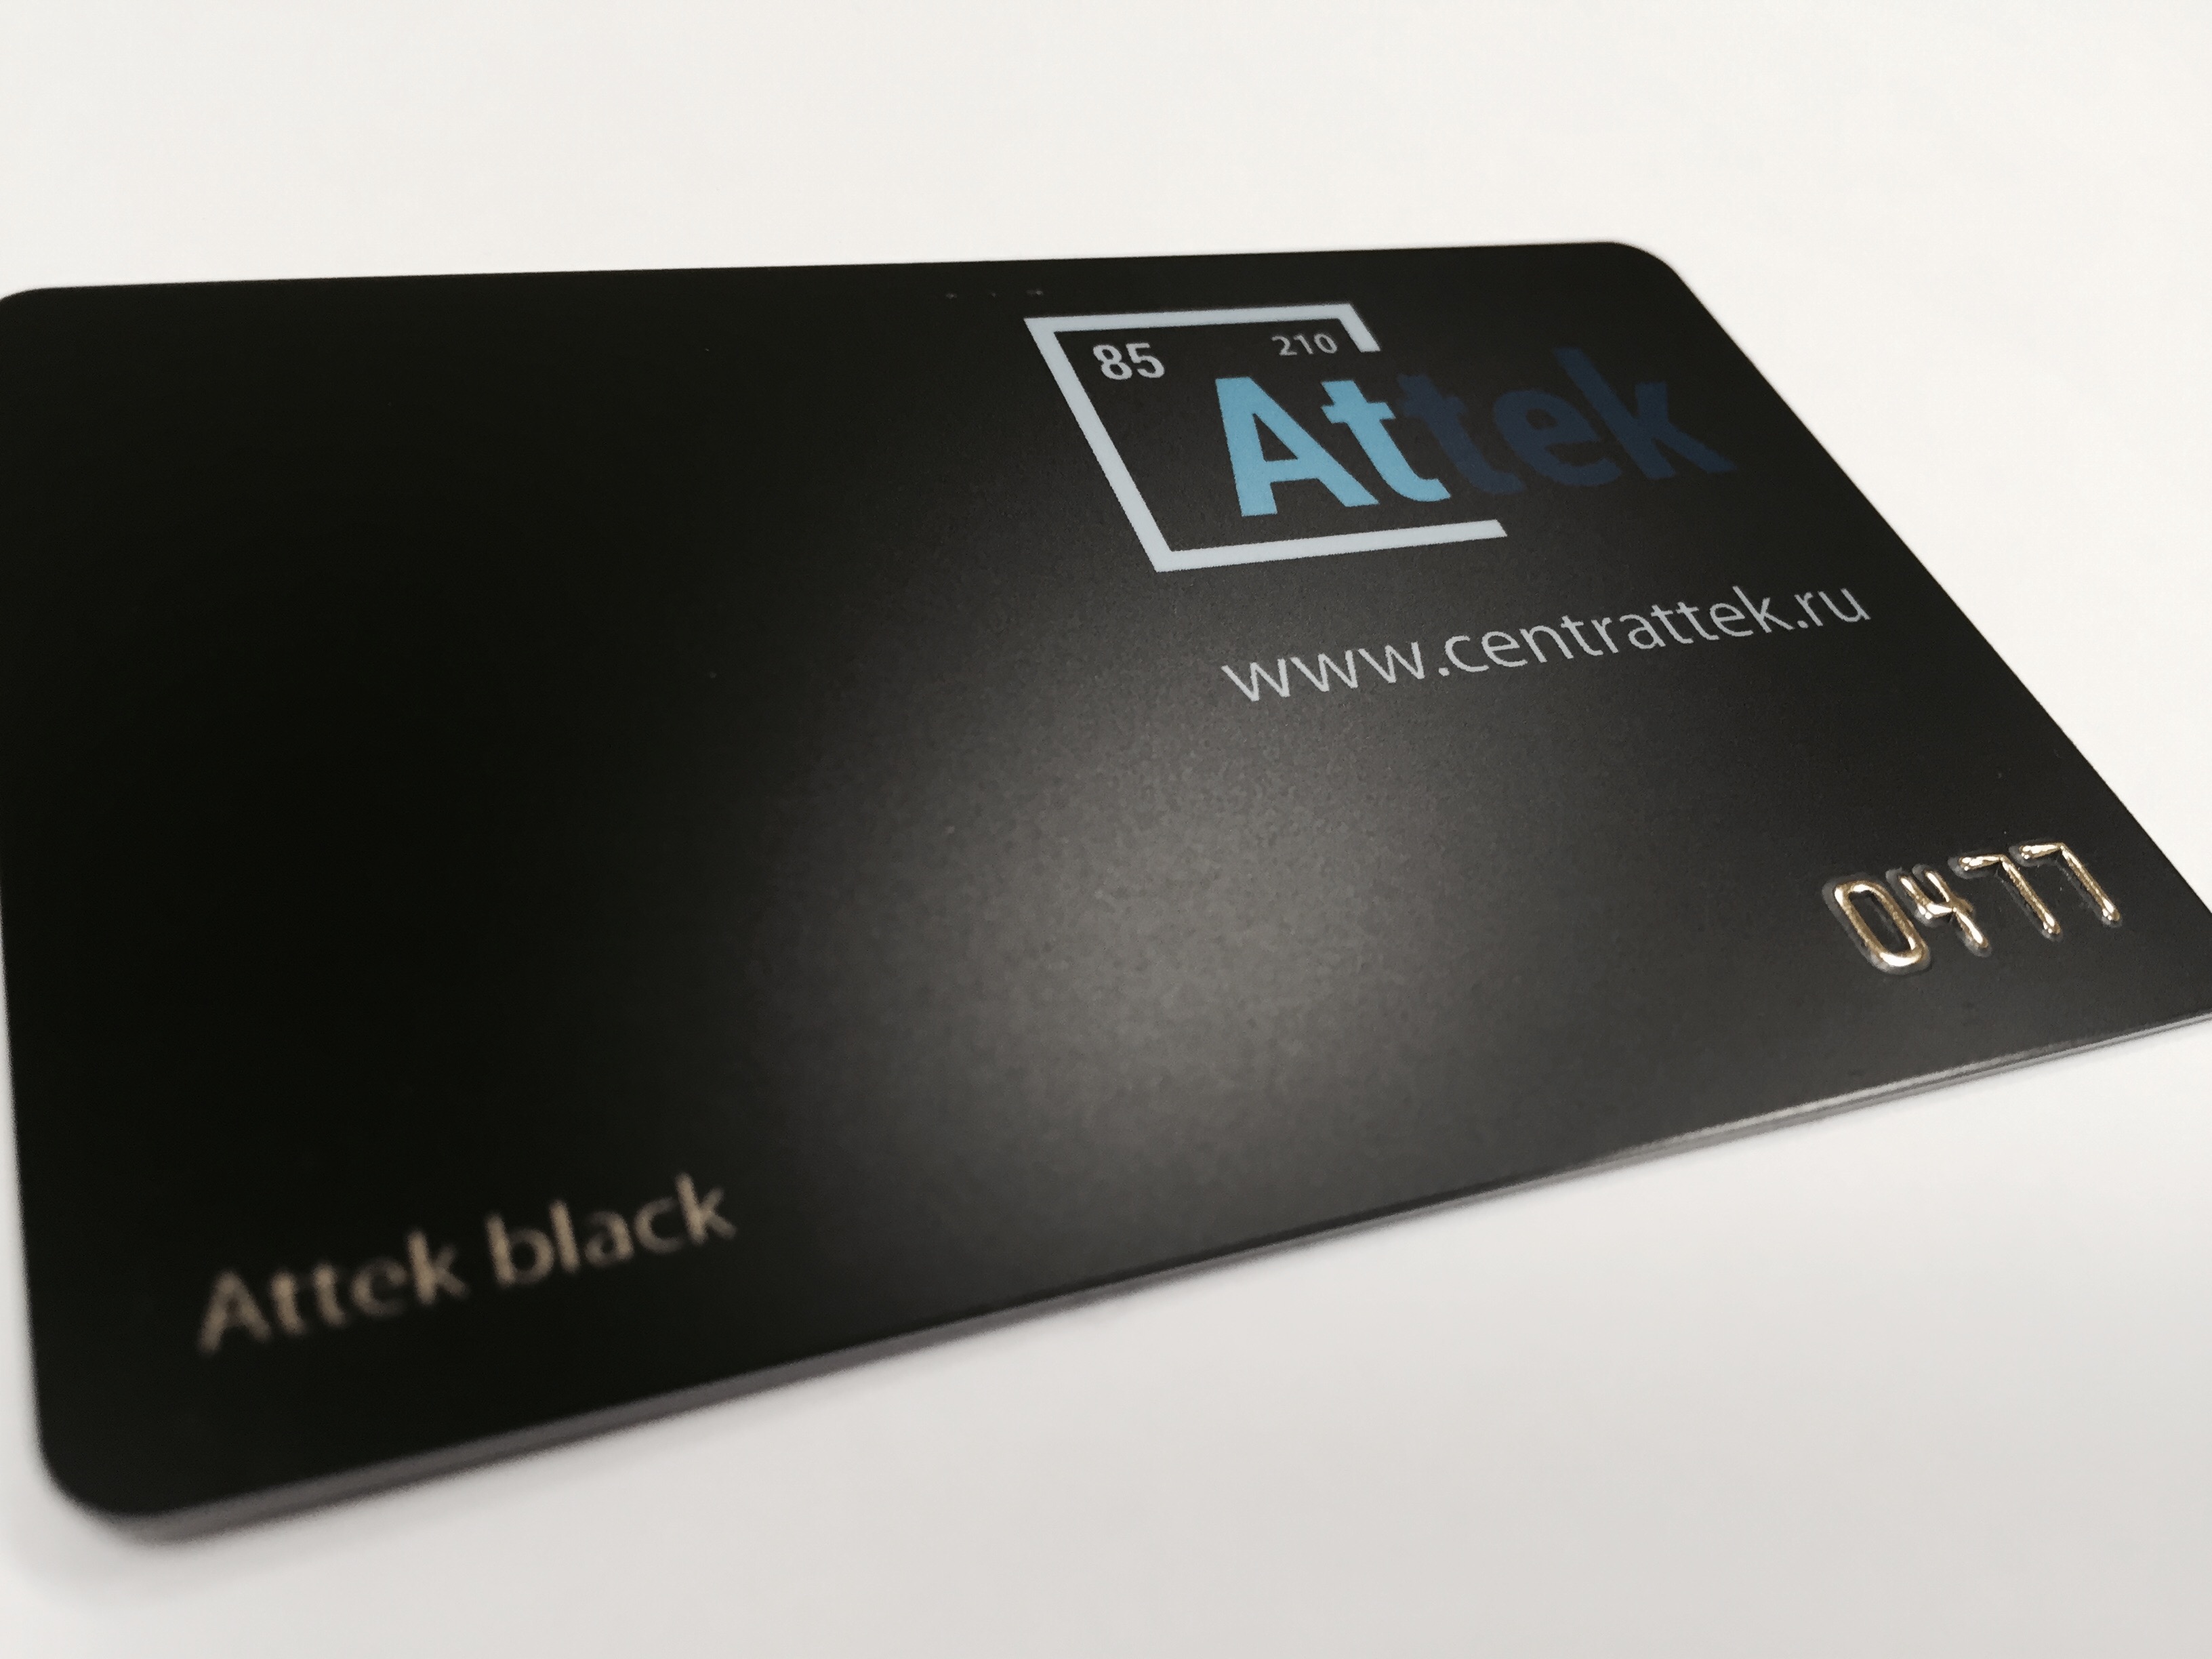 Картинка Attek black: накопительная карта для наших клиентов